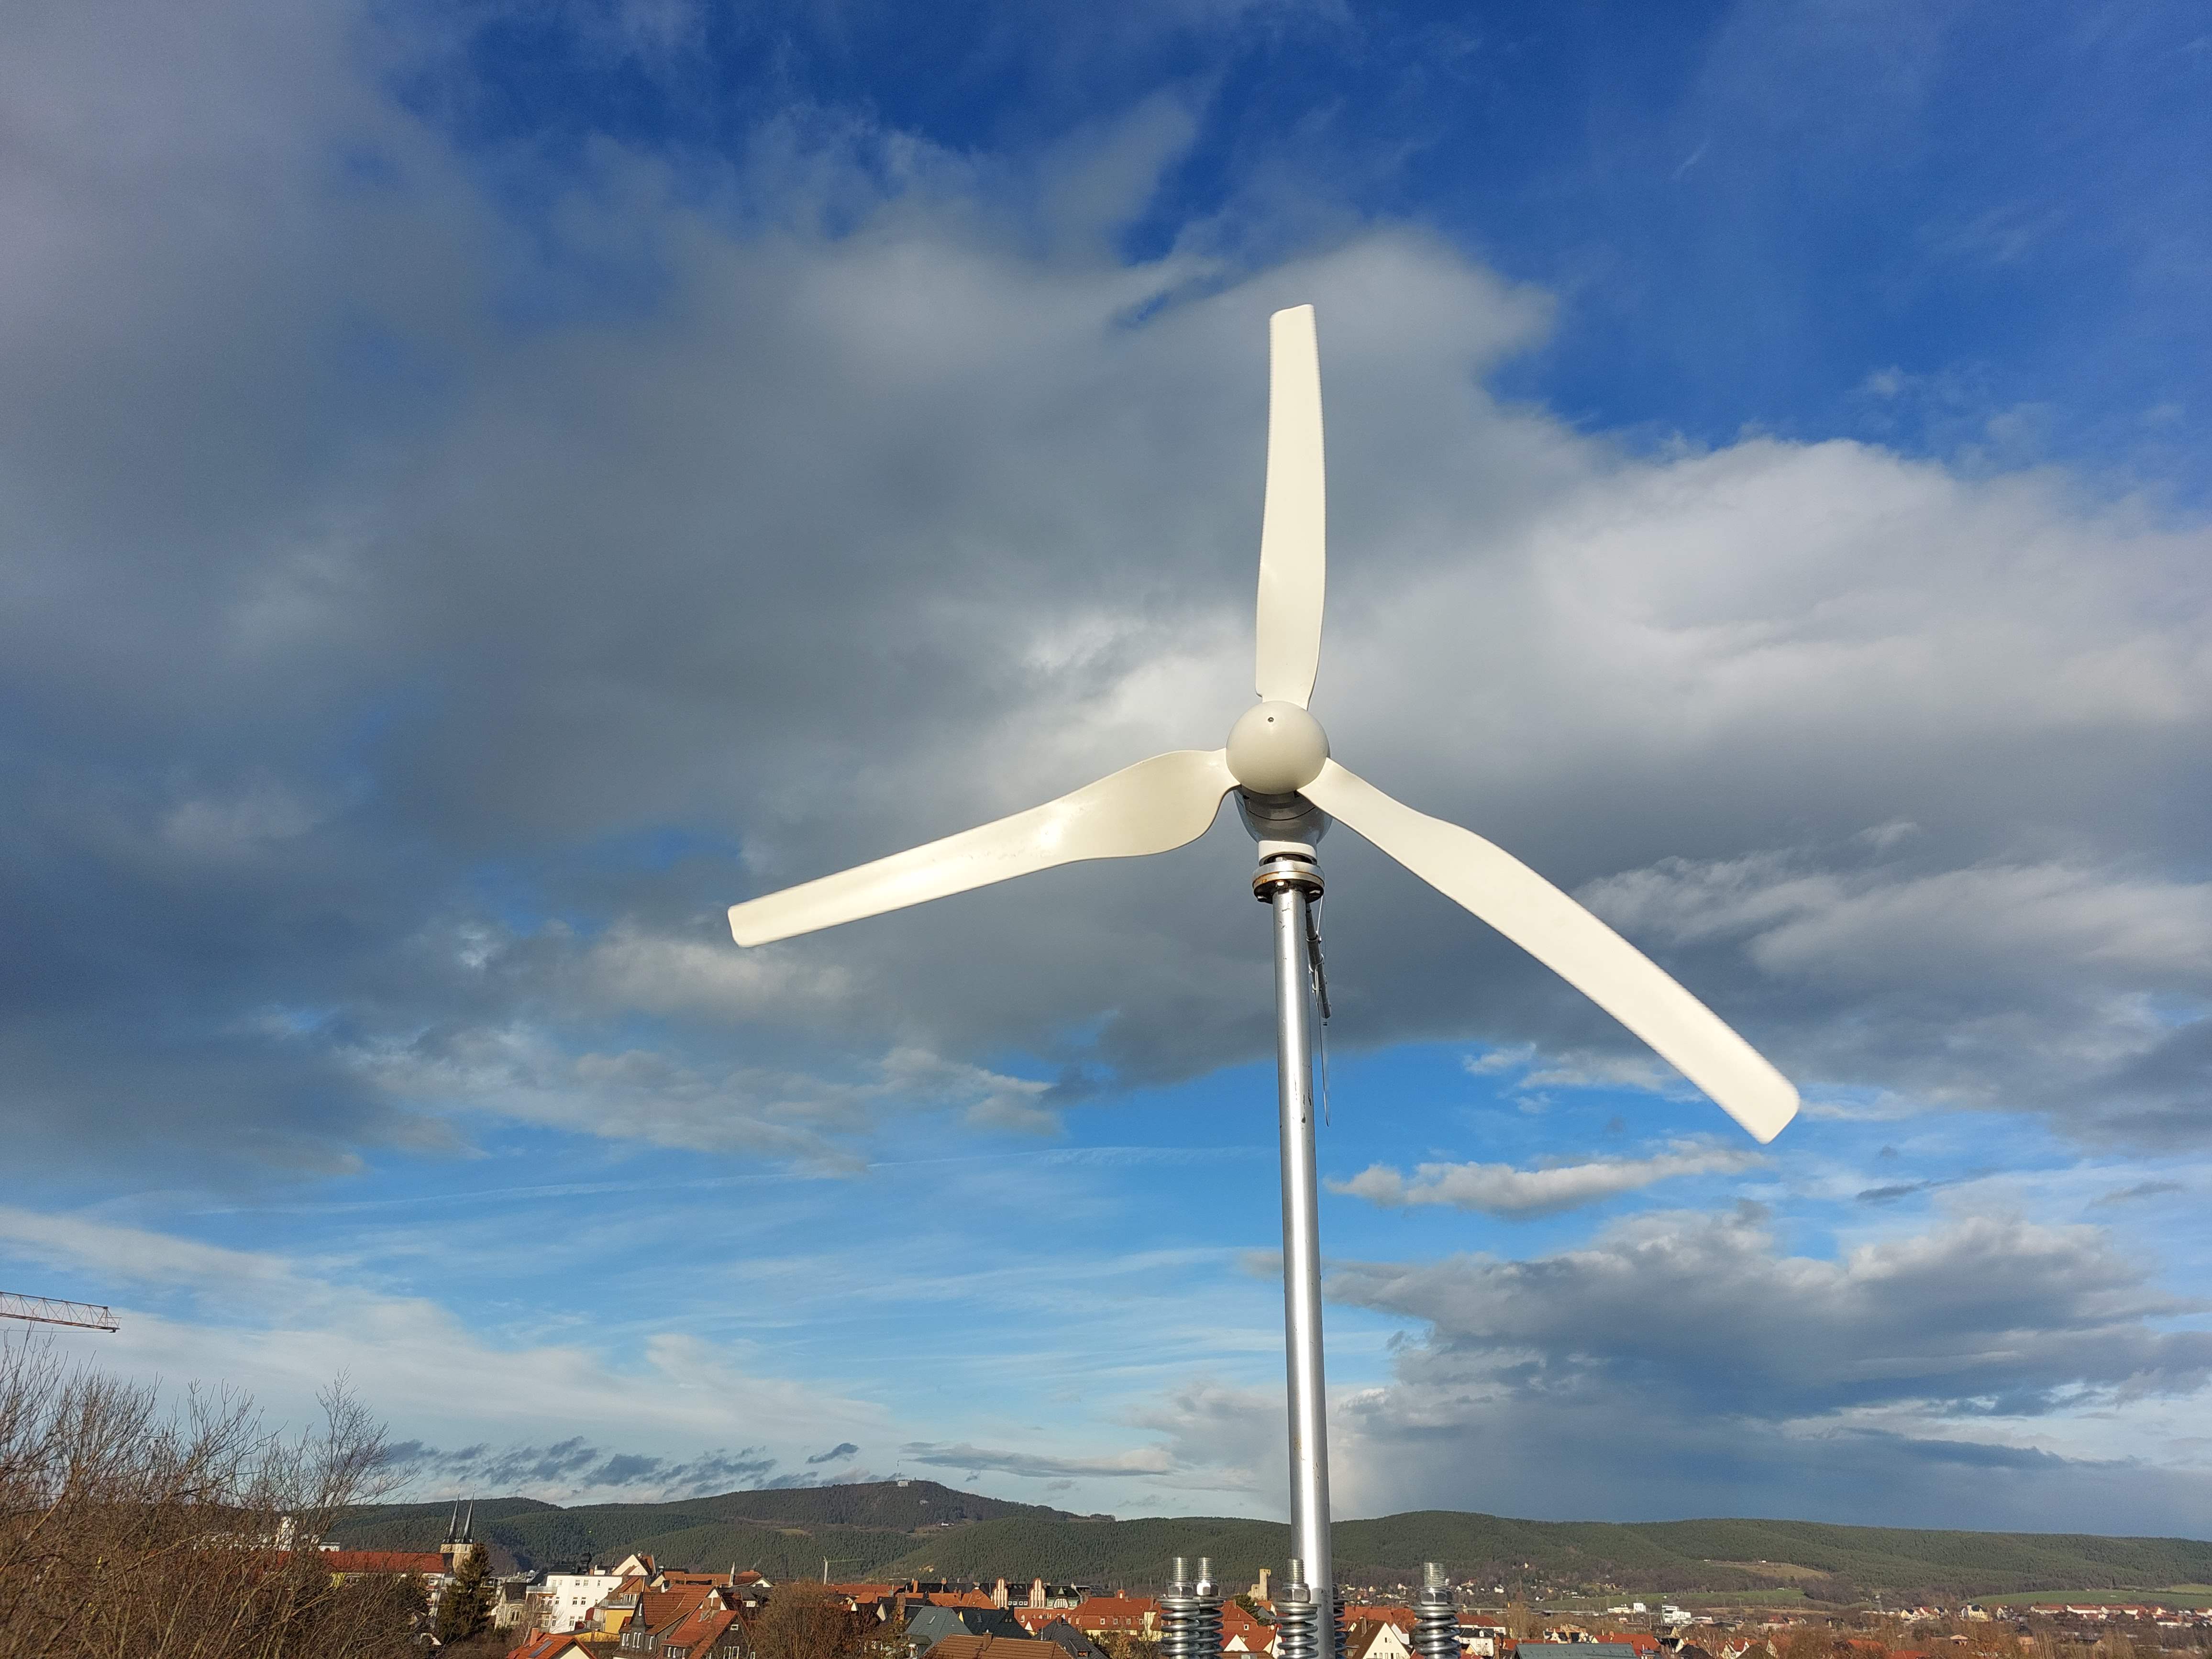 https://www.aerocatcher.de/media/image/95/39/34/windkraftanlage-notstrom-windenergie-stromerzeugung-33.jpg